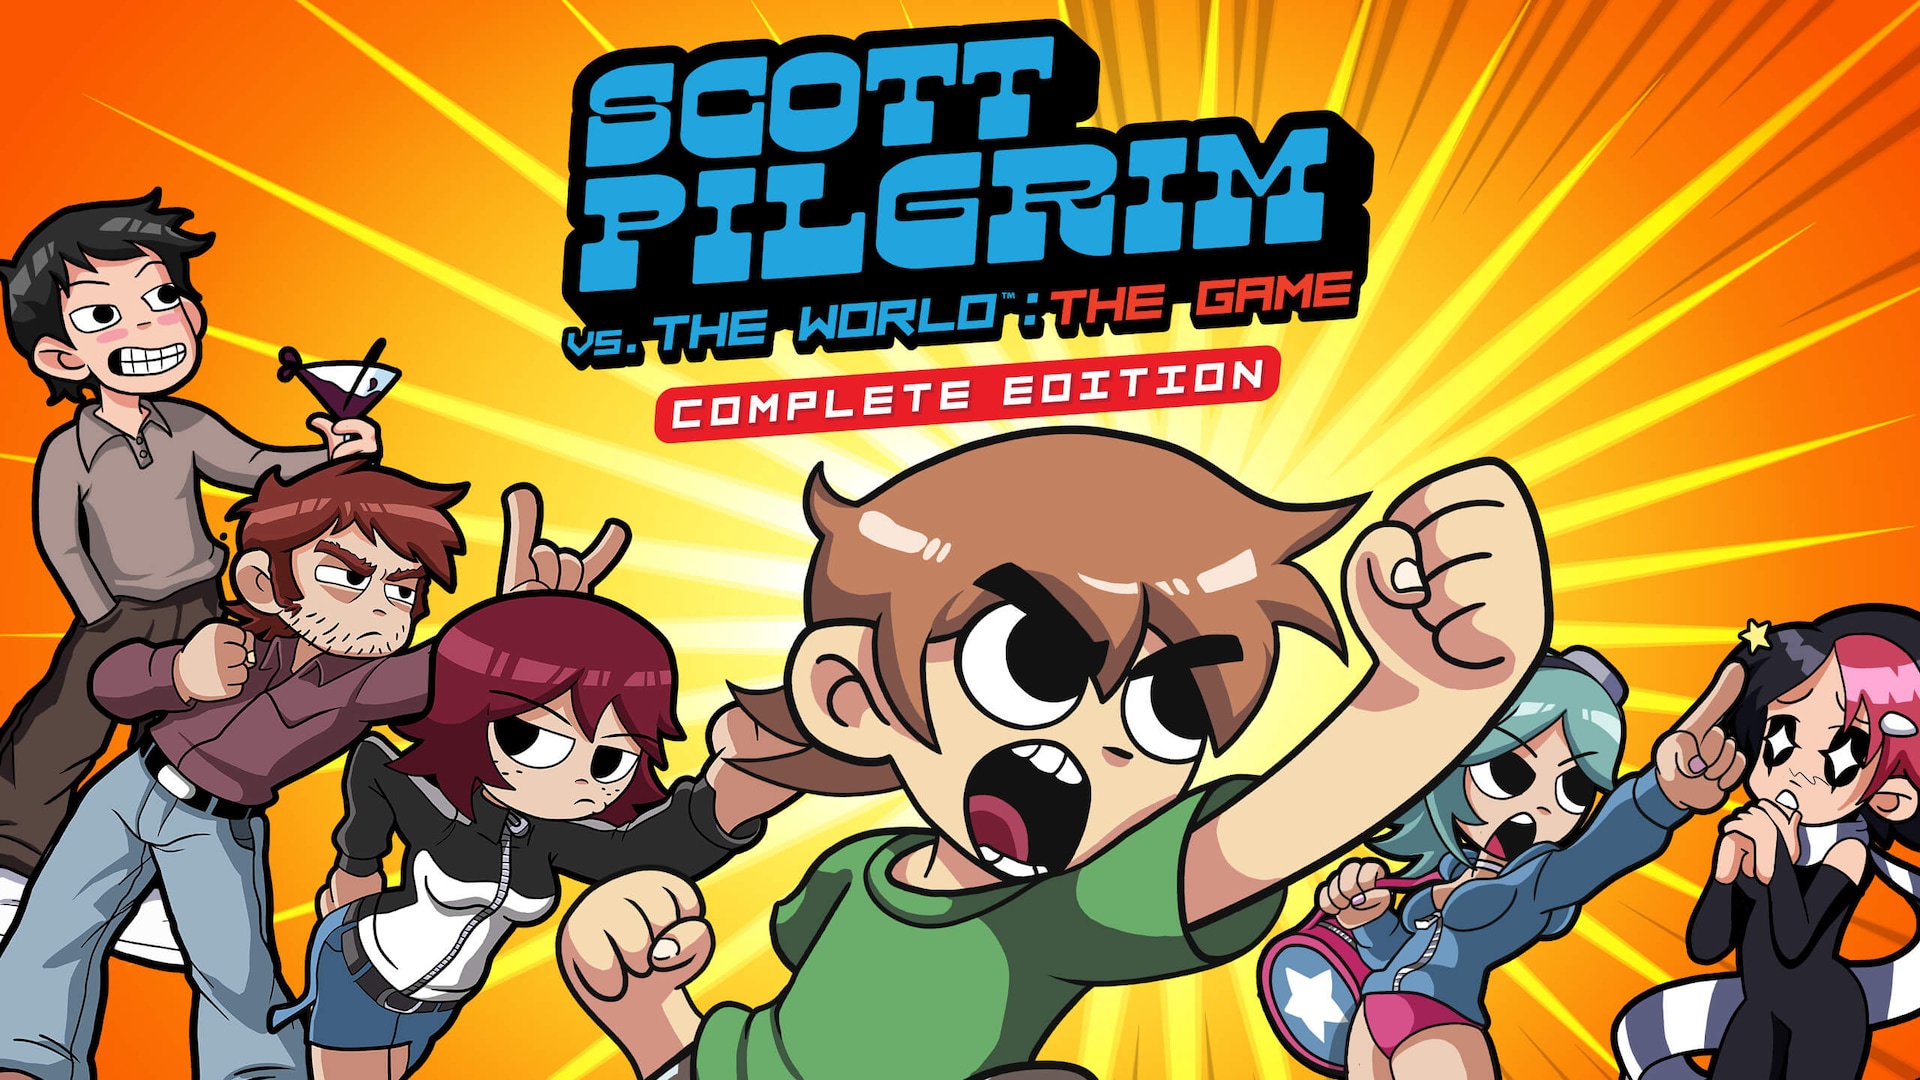 Scott Pilgrim Vs The World The Game Edisi Lengkep